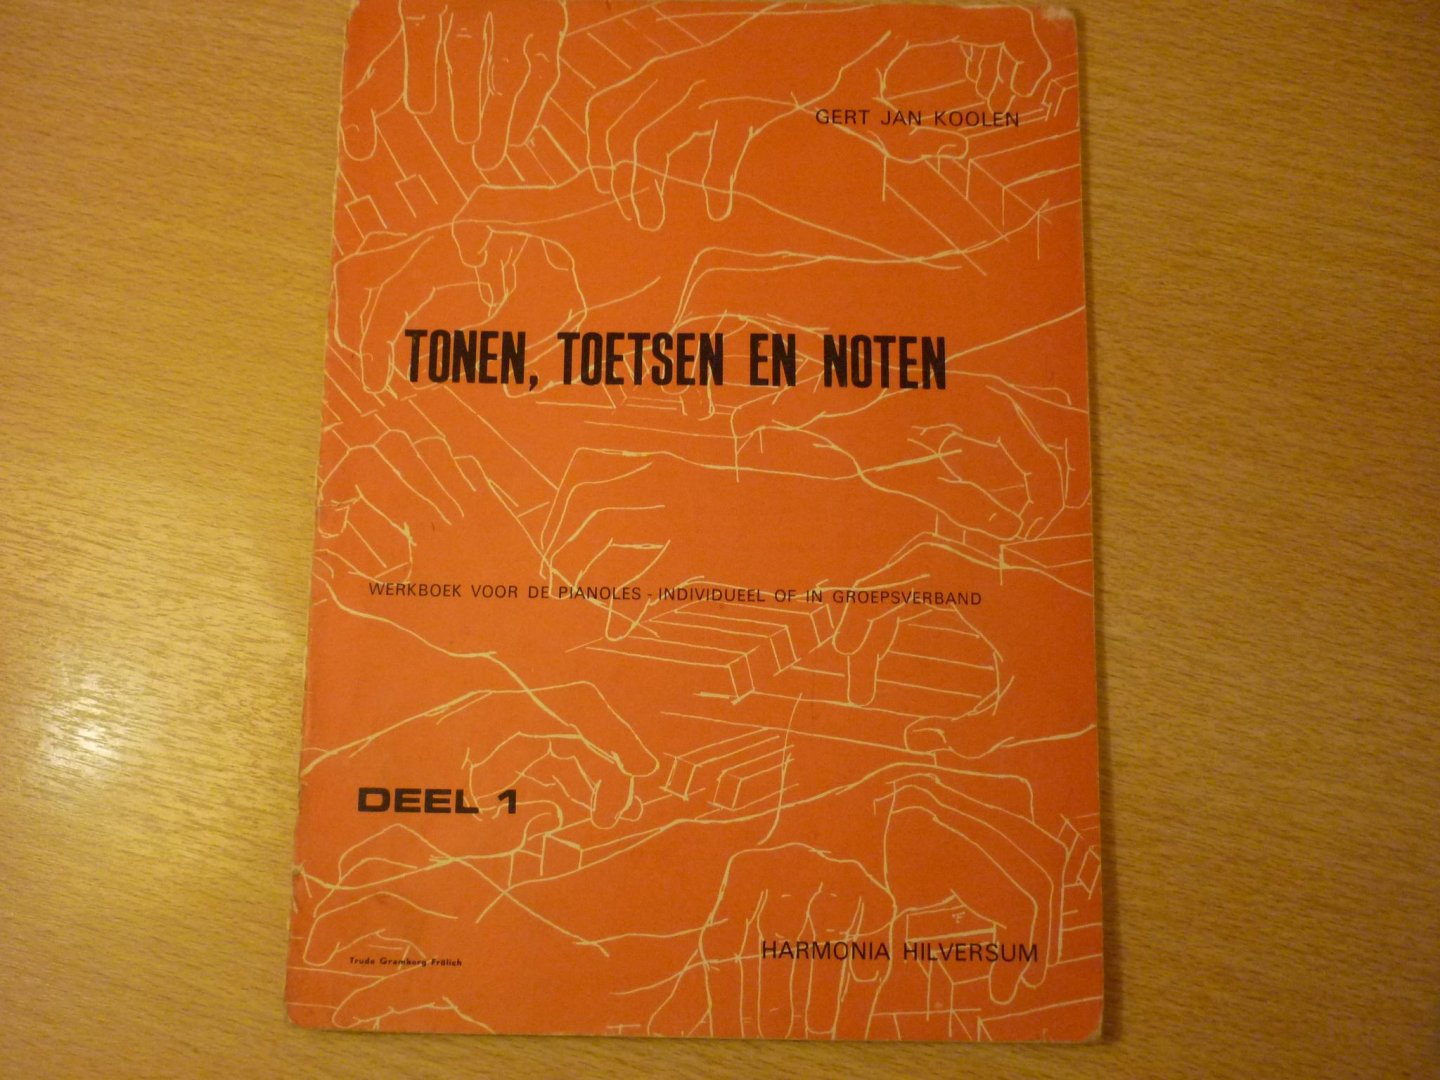 Koolen; Gert Jan - Tonen, Toetsen en Noten; Werkboek voor de pianoles - Deel 1